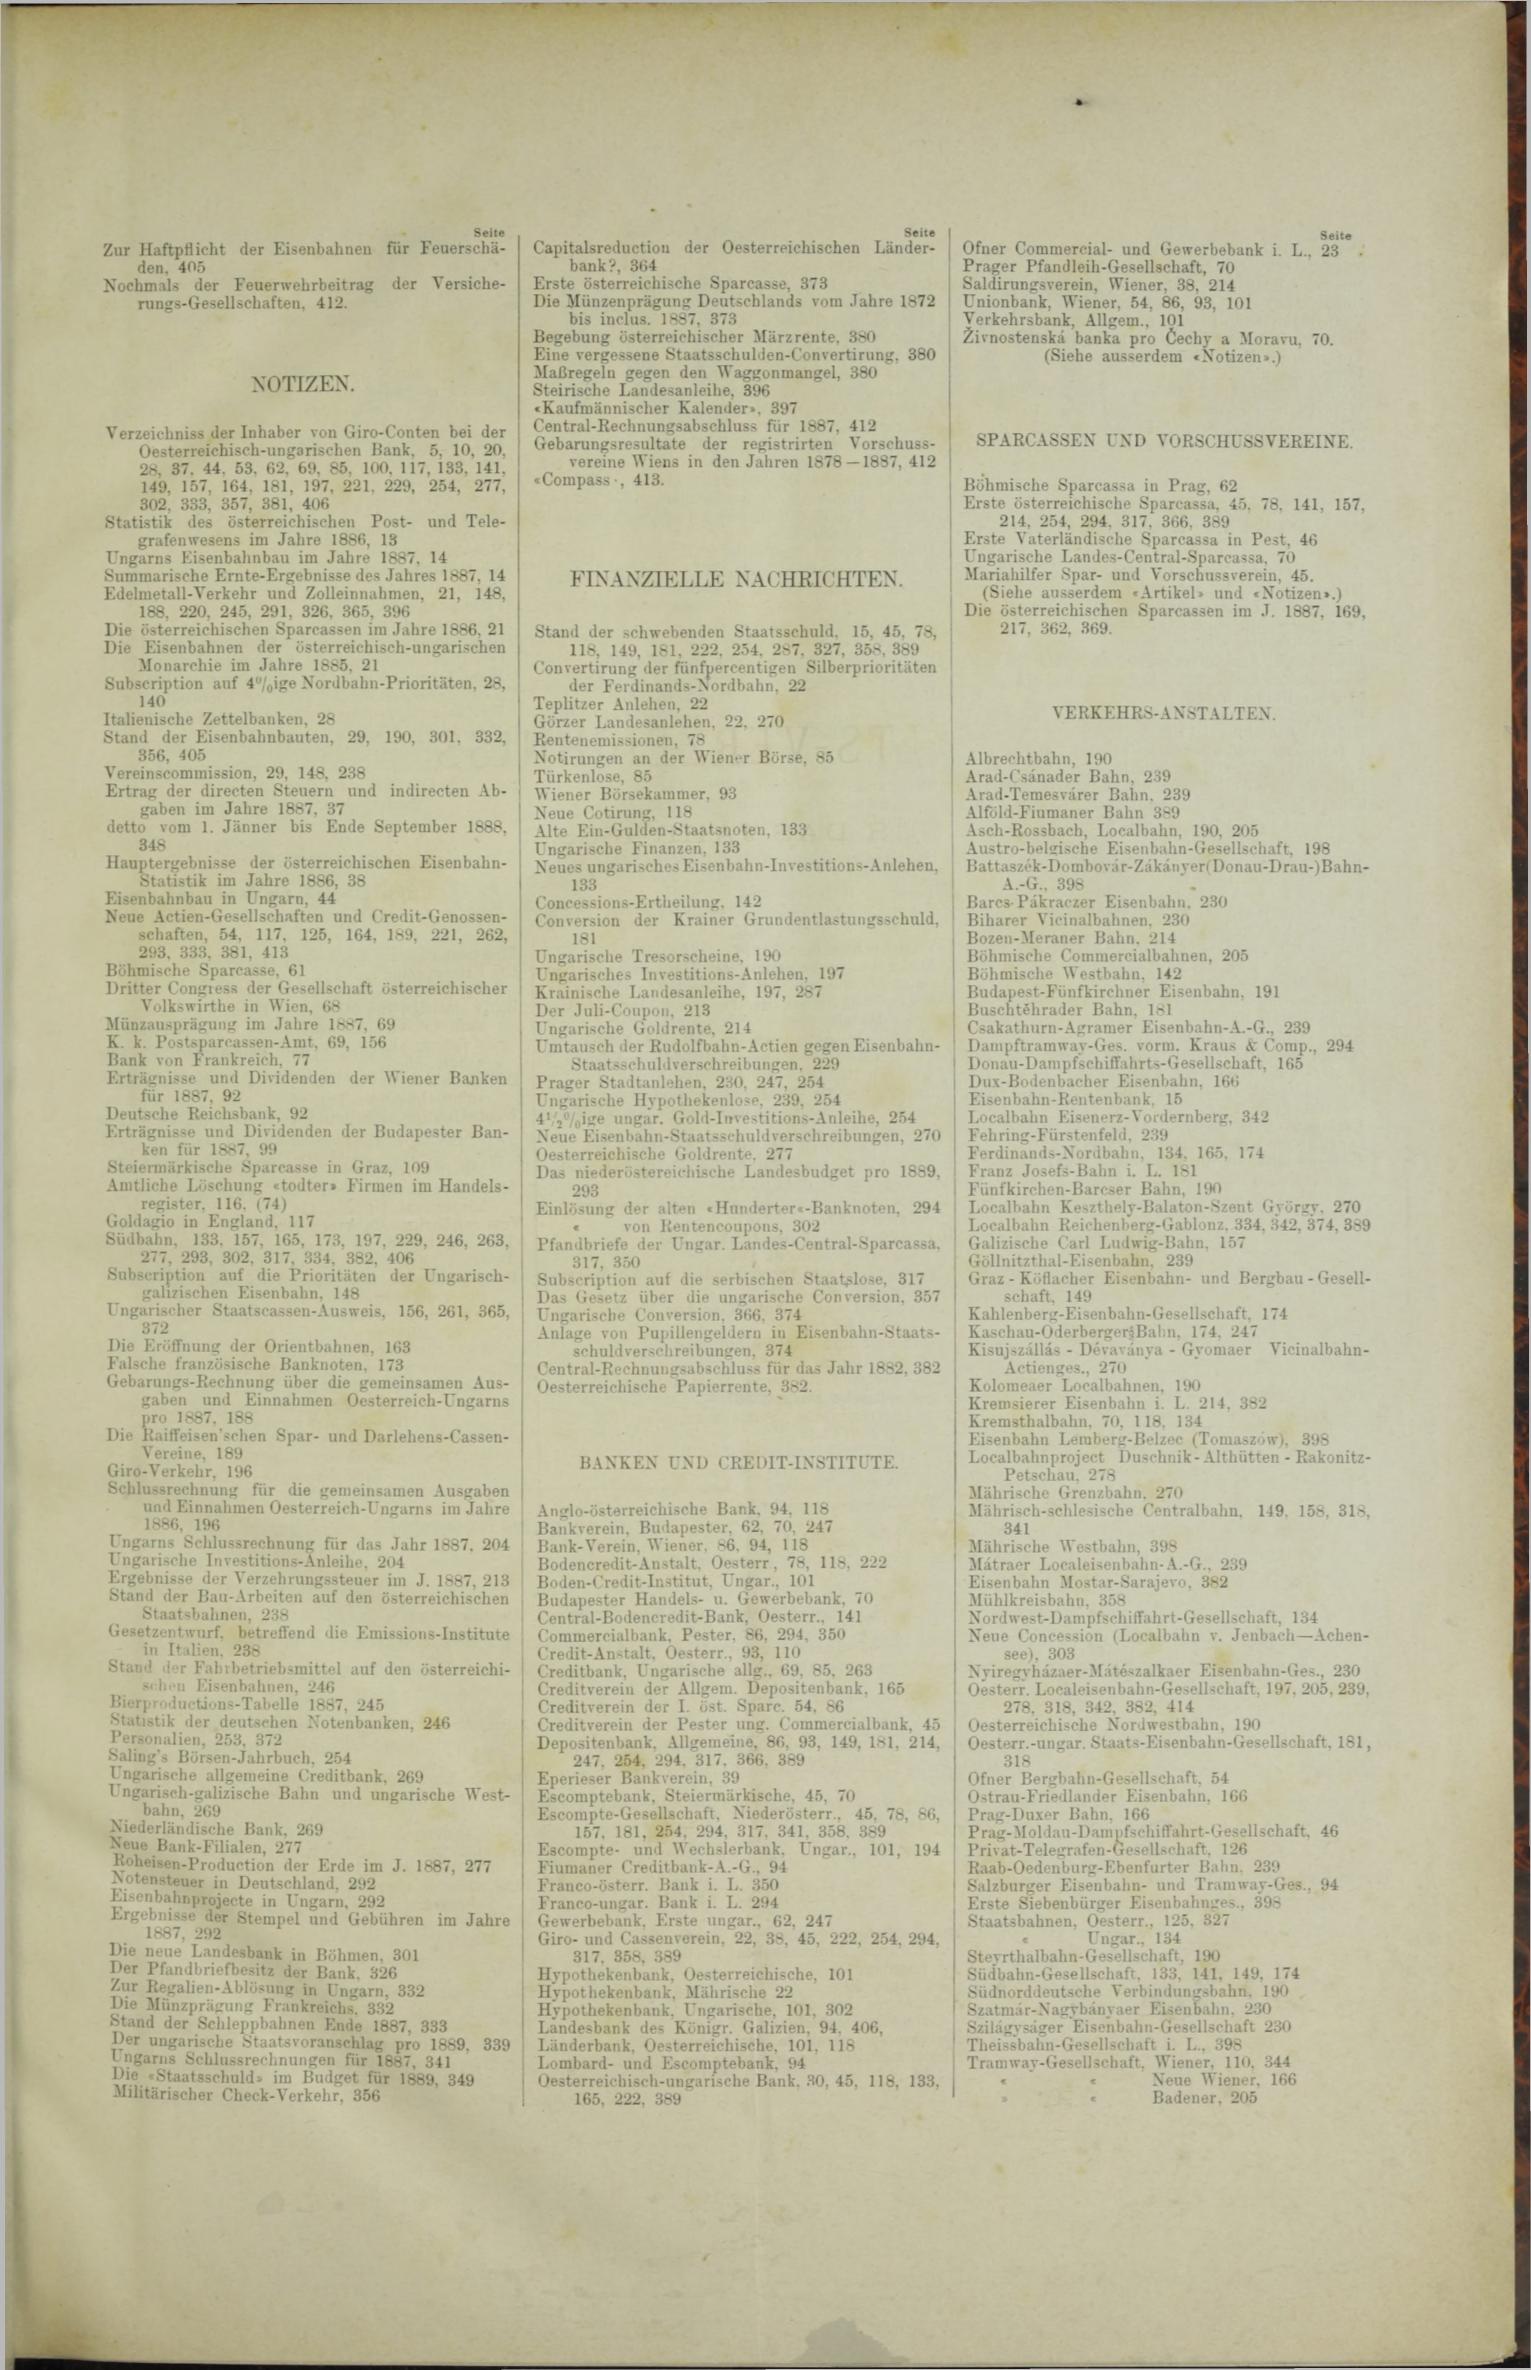 Der Tresor 28.12.1888 - Seite 11